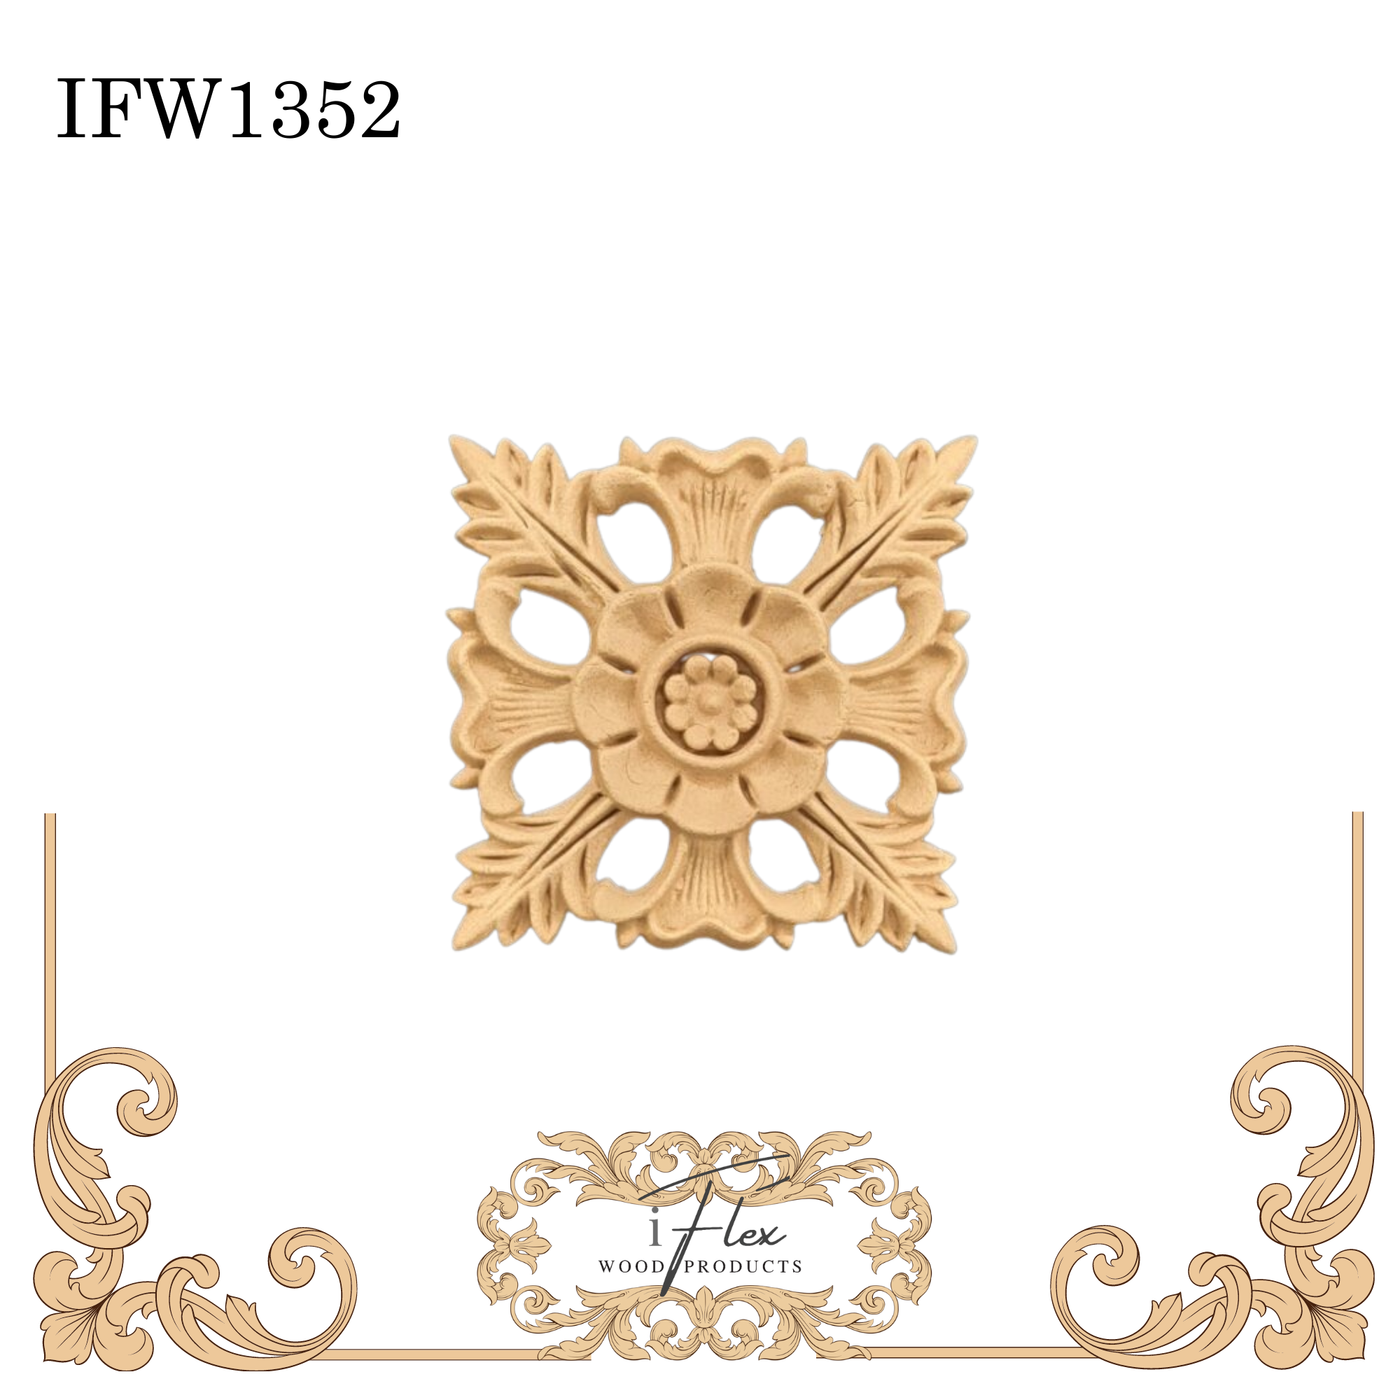 IFW 1352